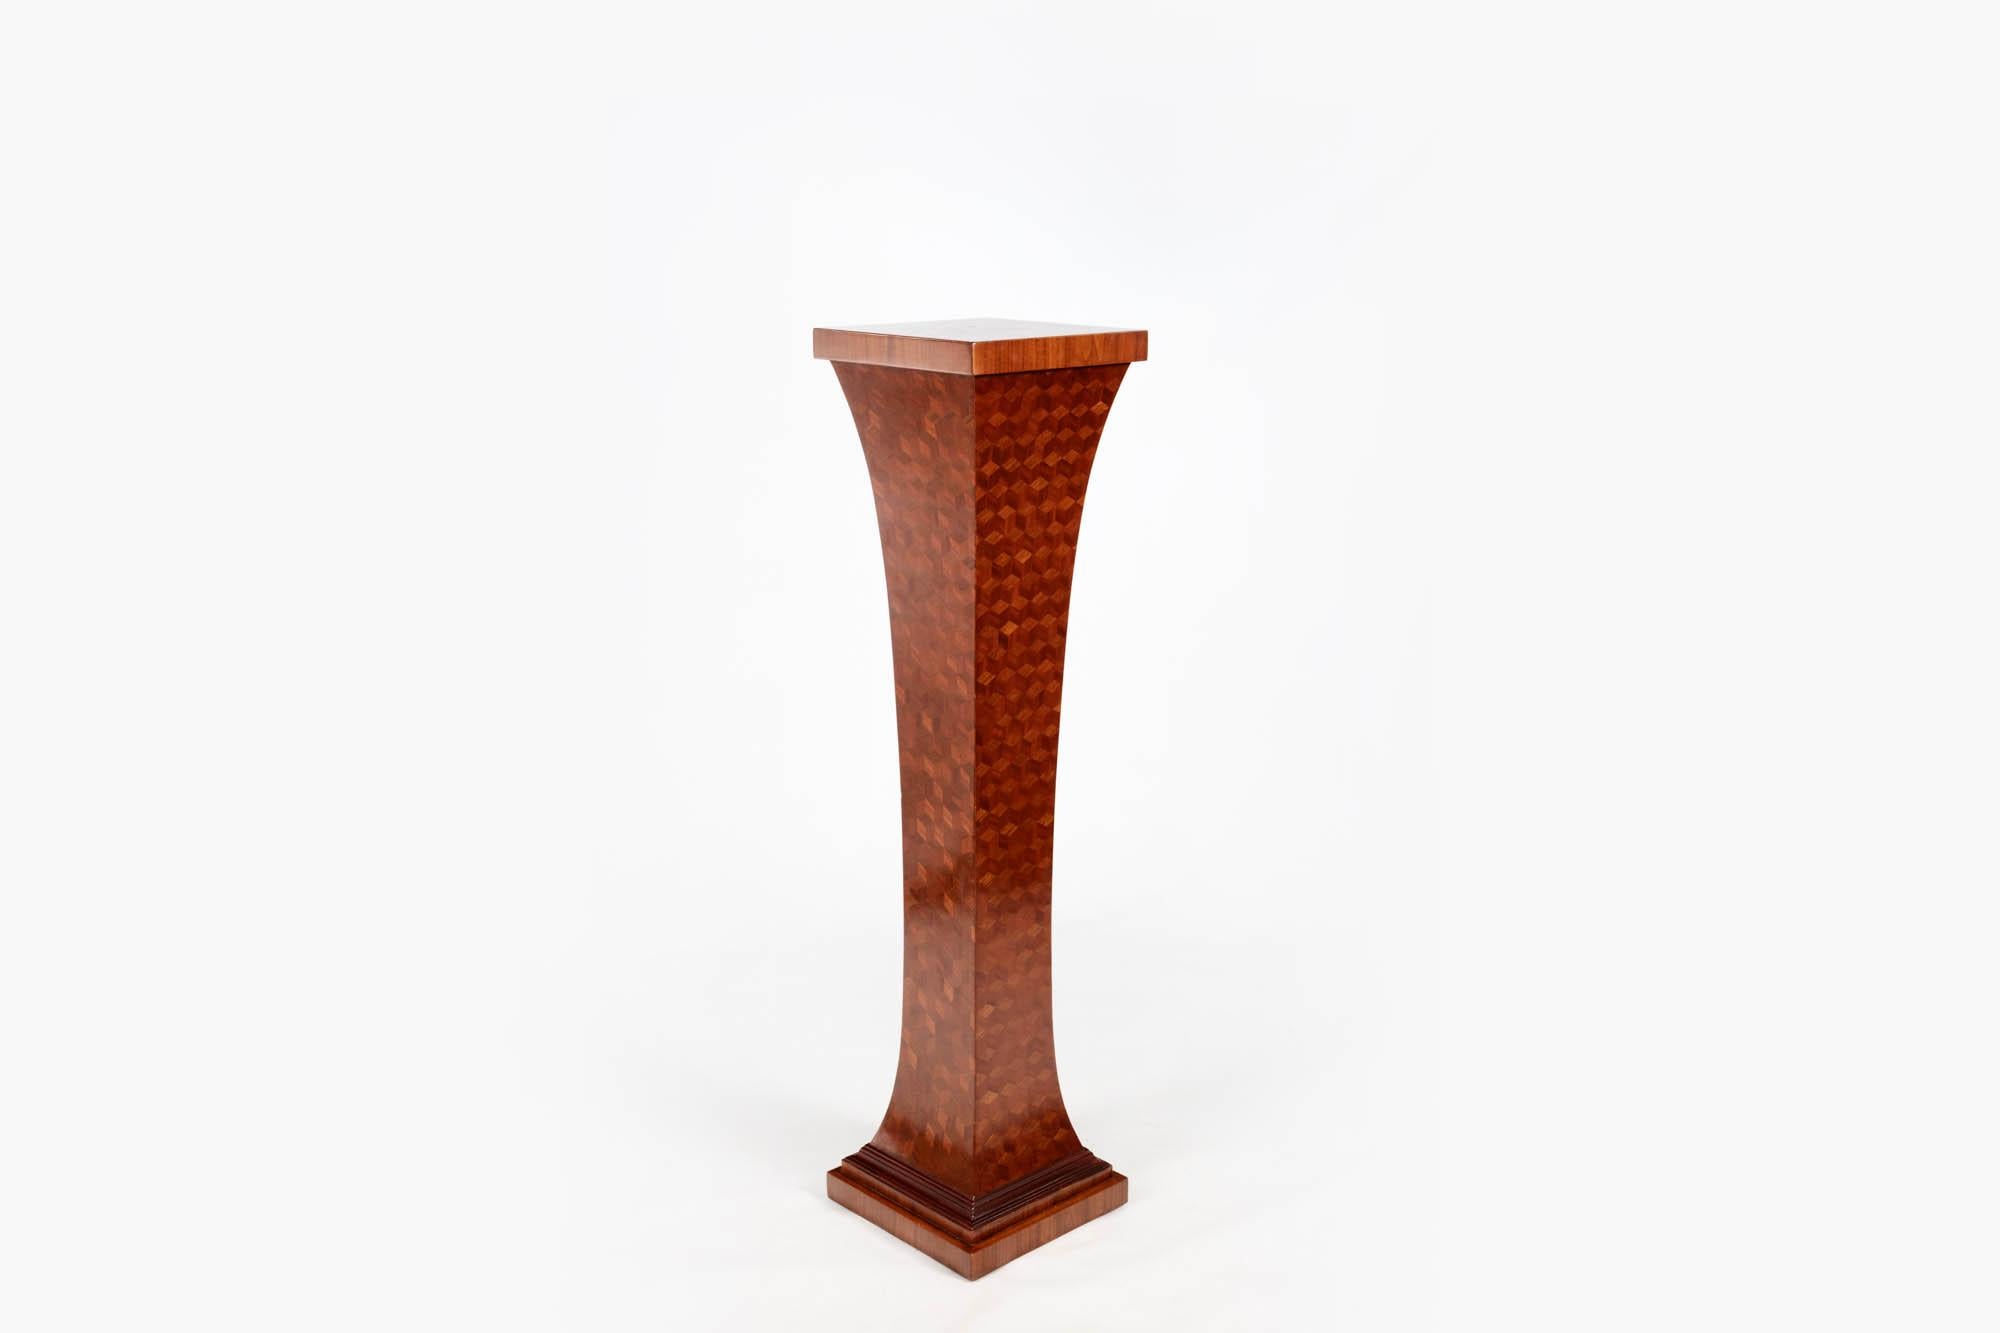 1930er Jahre Parkettsockel mit Würfelformen in Trompe-l'Oeil-Technik.

Die Parkettierung ist eine dekorative Technik, die in der Holzbearbeitung verwendet wird, um geometrische Muster in Holz zu schaffen.

Die Techniken der Parkettierung gehen